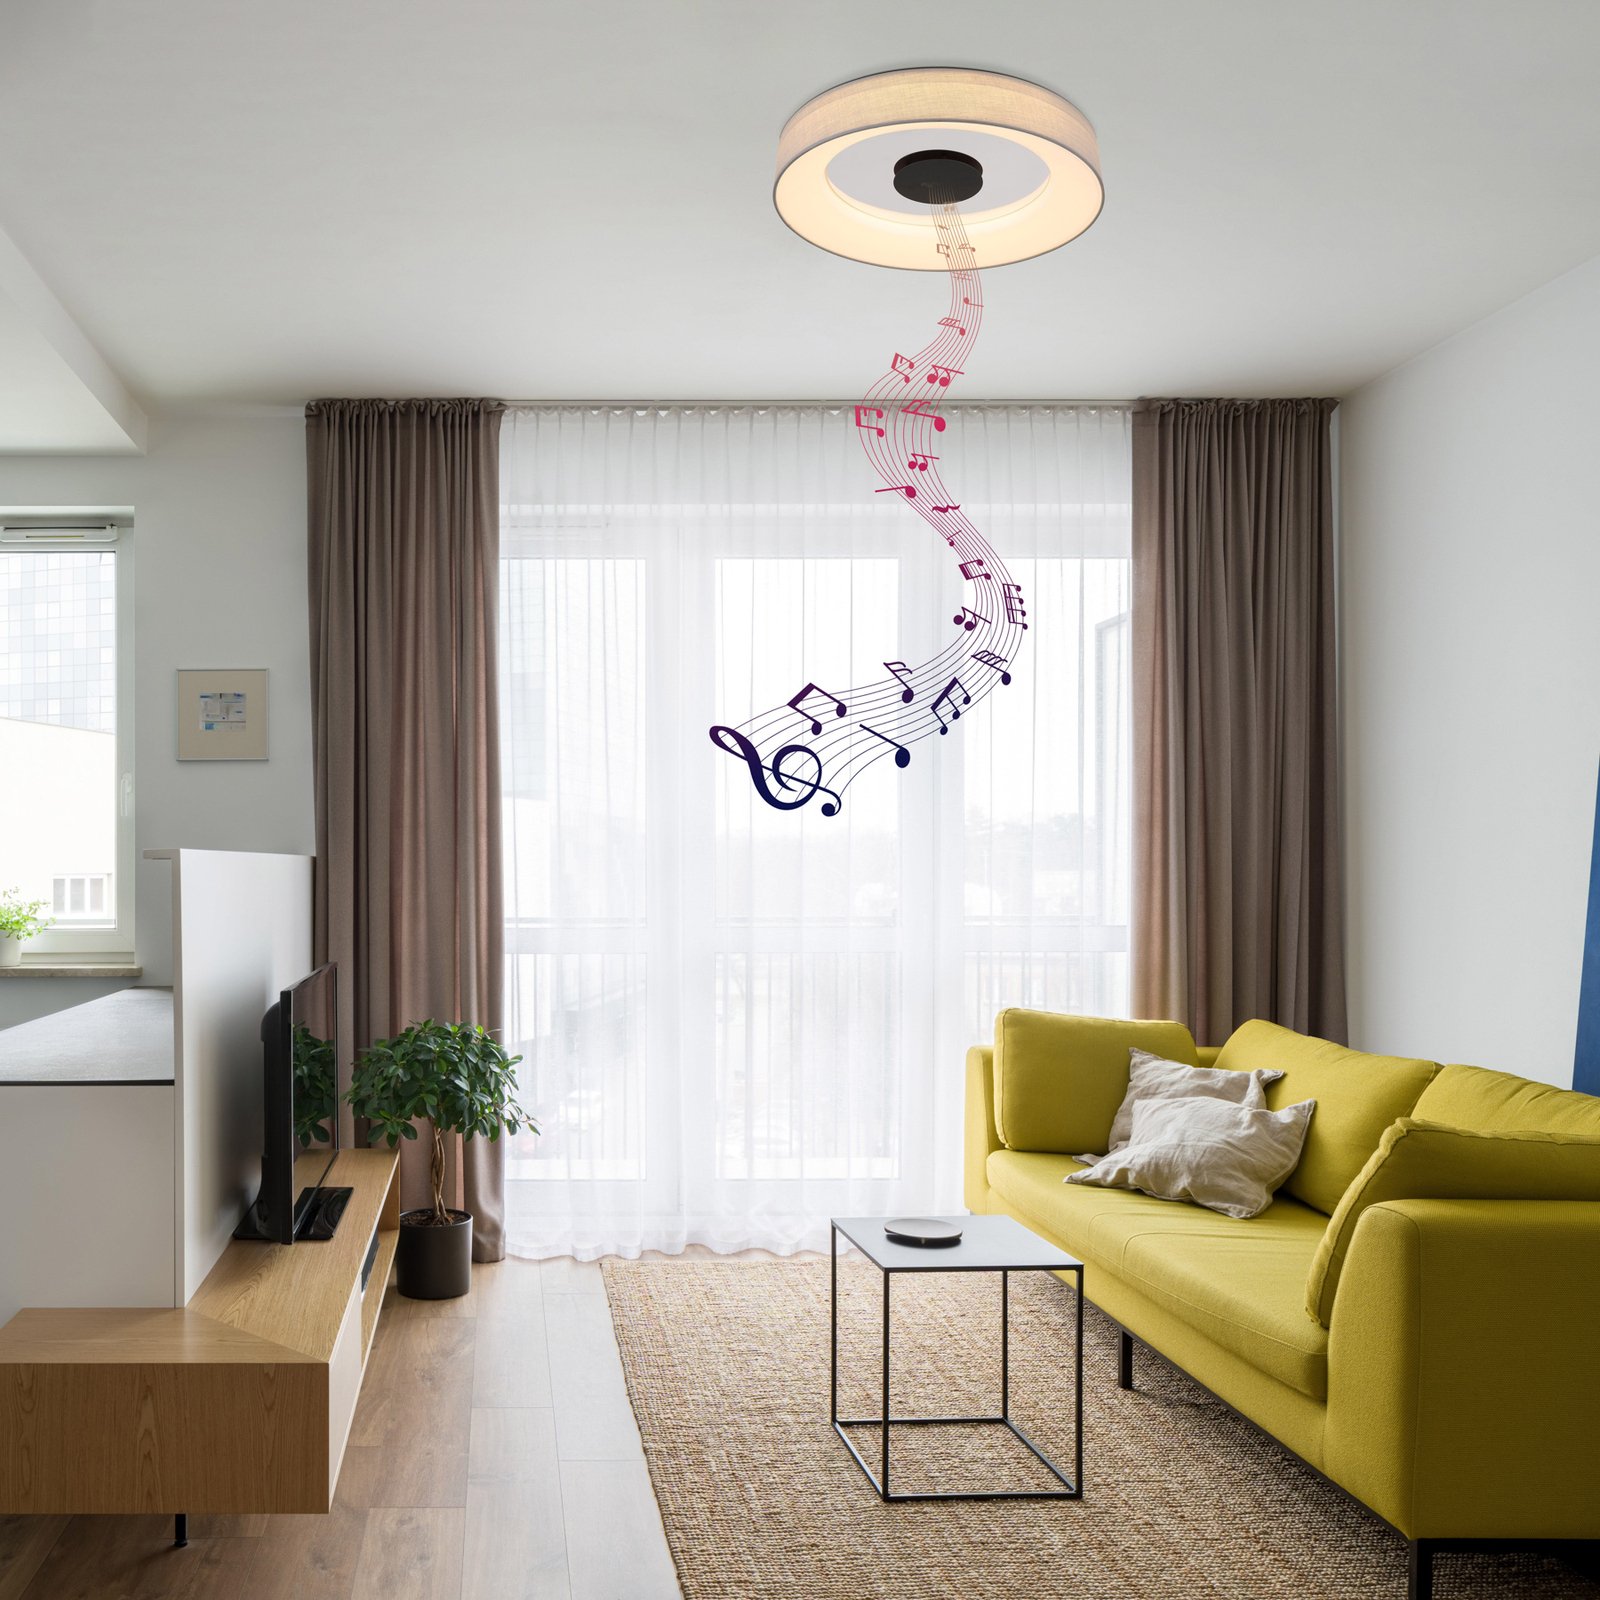 Terpsa smart LED ceiling light, white/grey, Ø 46.8 cm, fabric